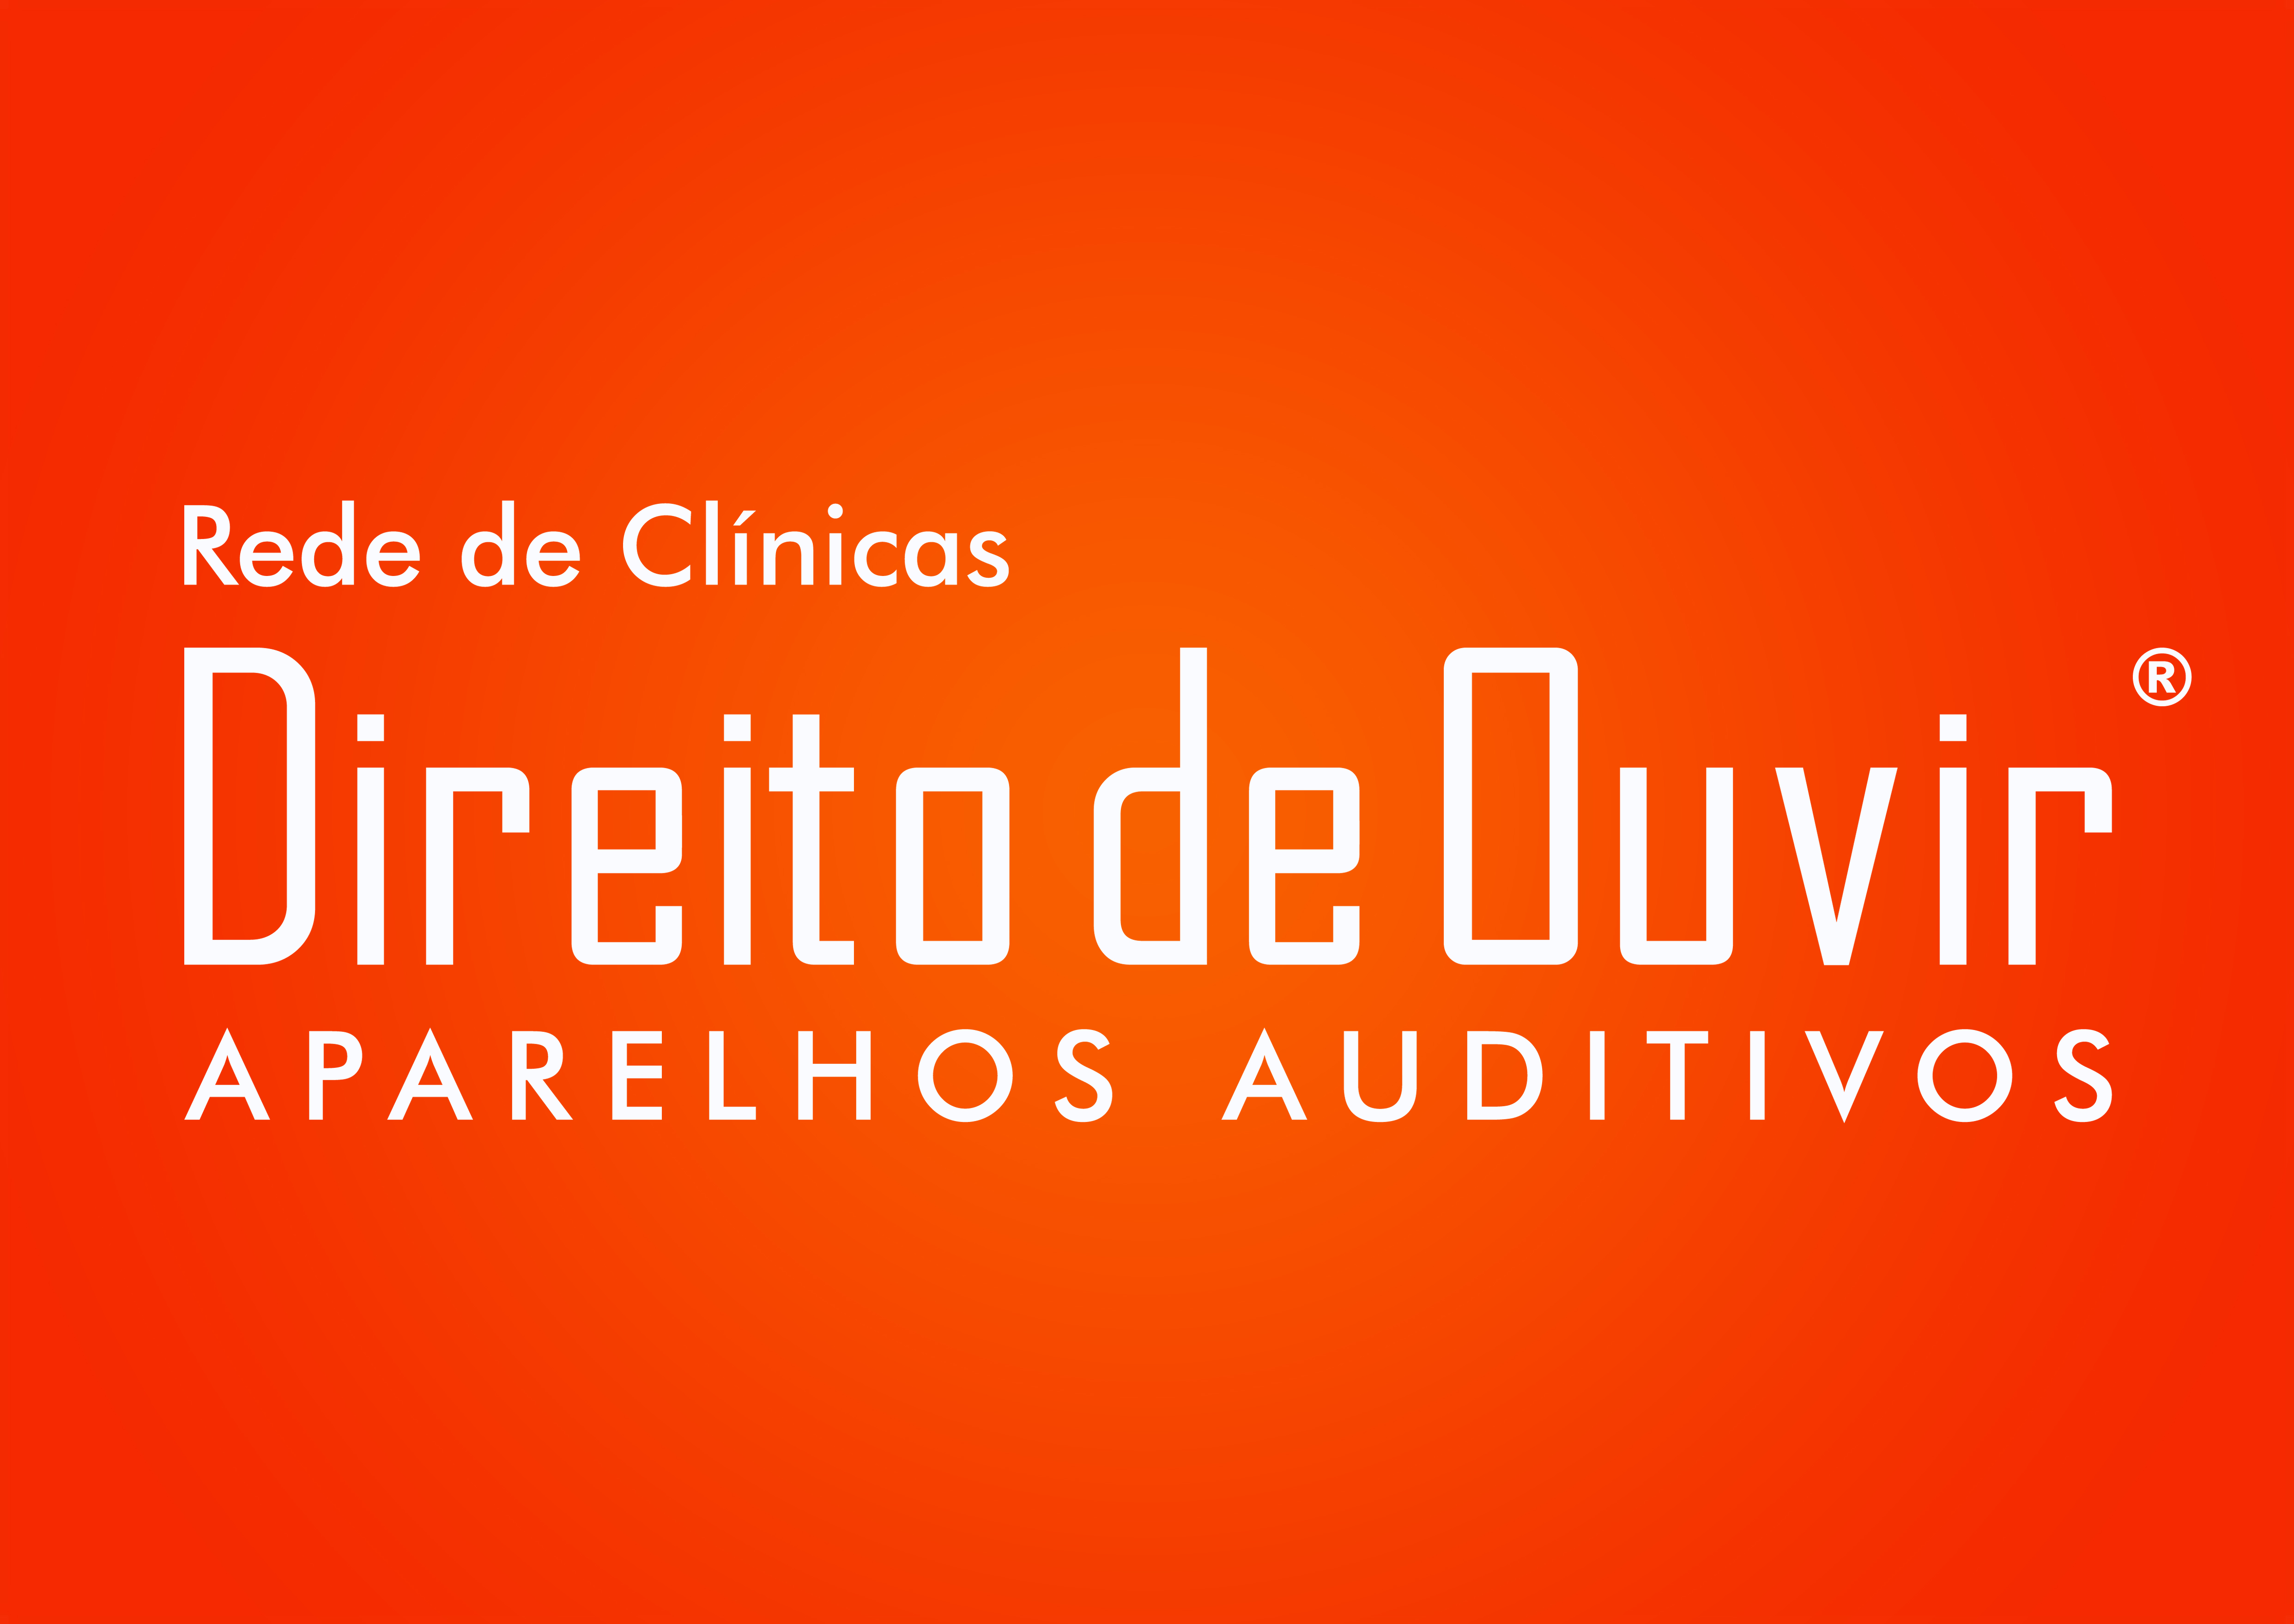 REDE DE CLÍNICAS DIREITO DE OUVIR logo